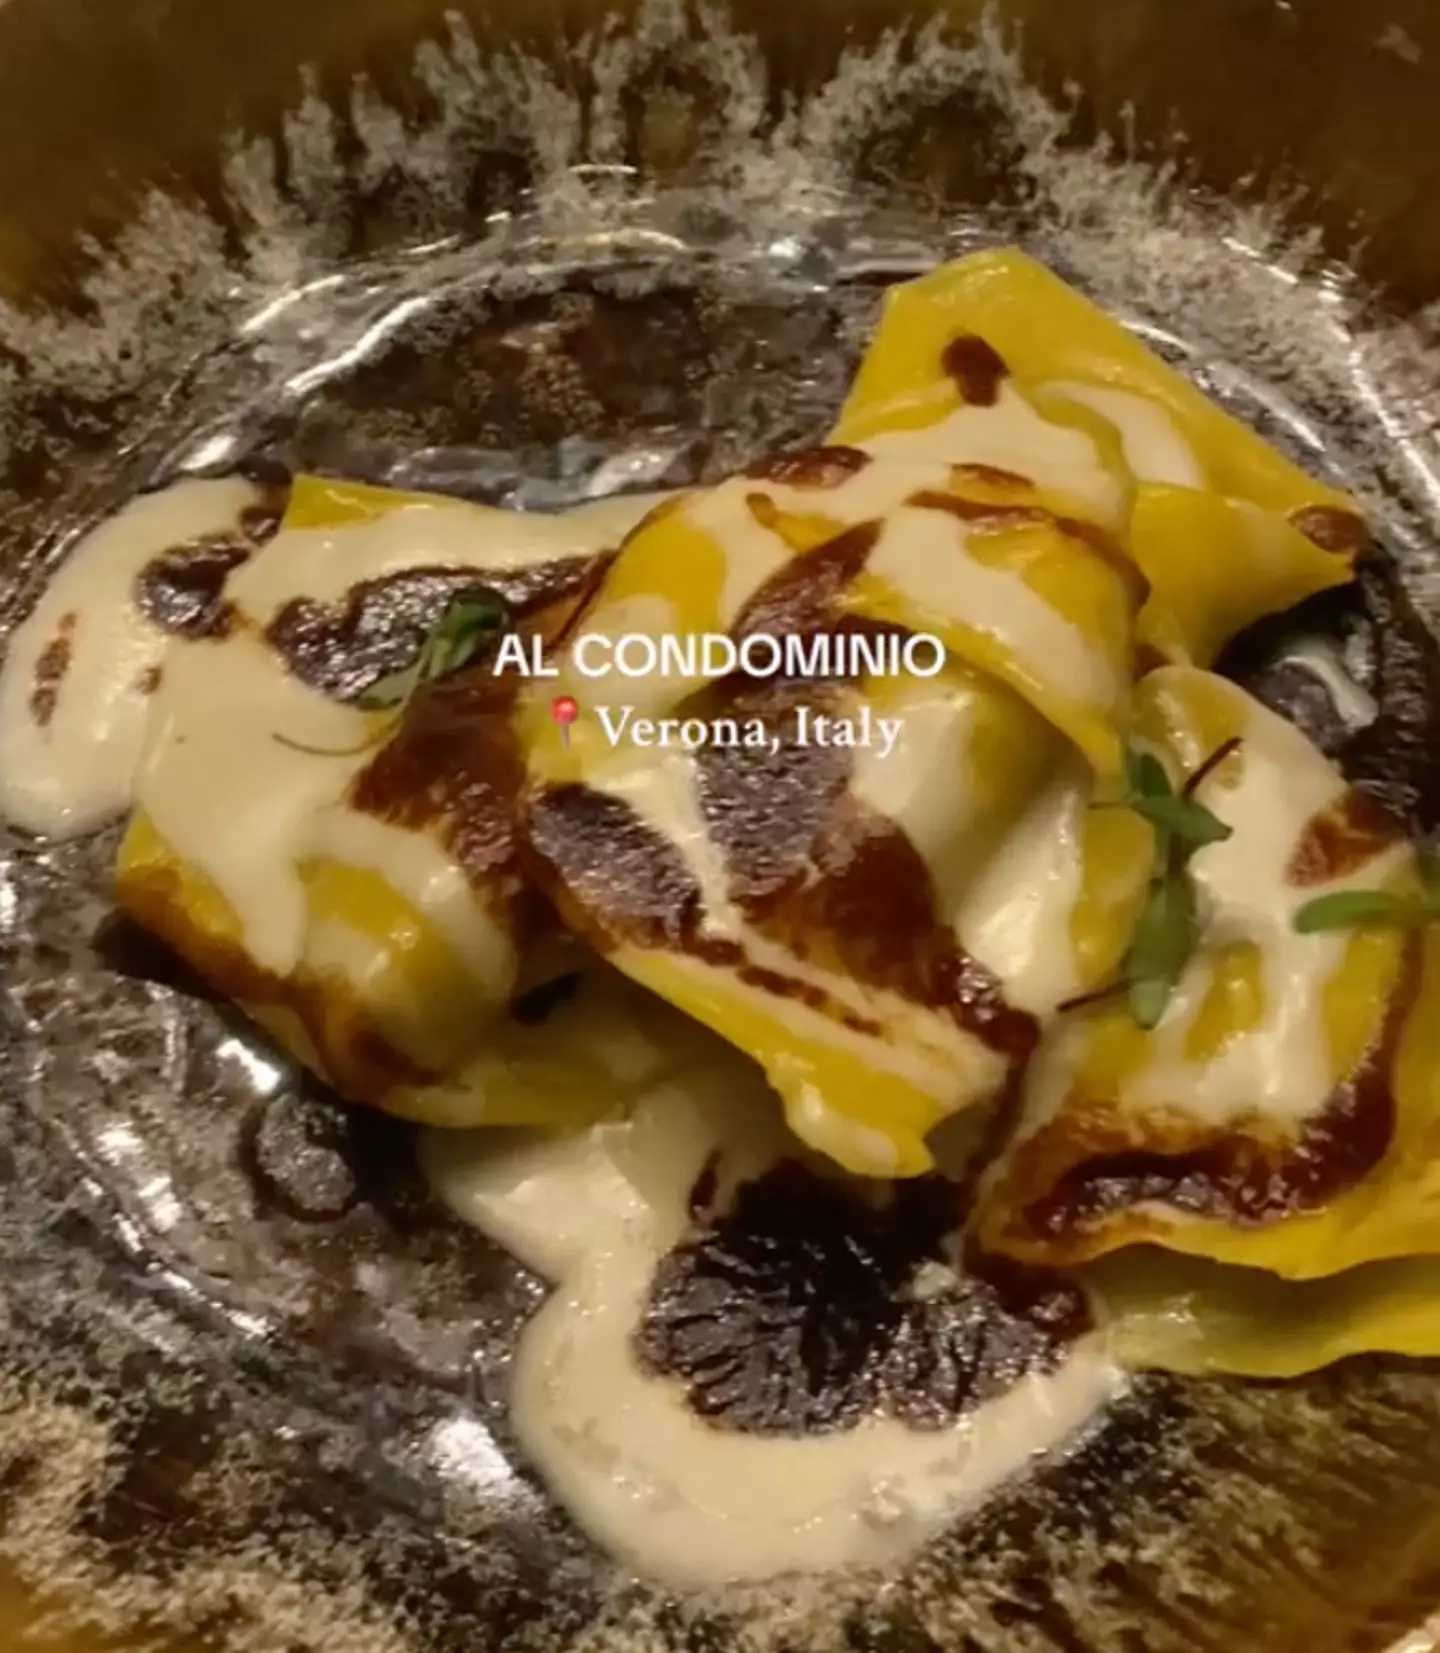 Al Condominio restaurant is located in Verona, Italy. (TikTok/@leca.ursachi)